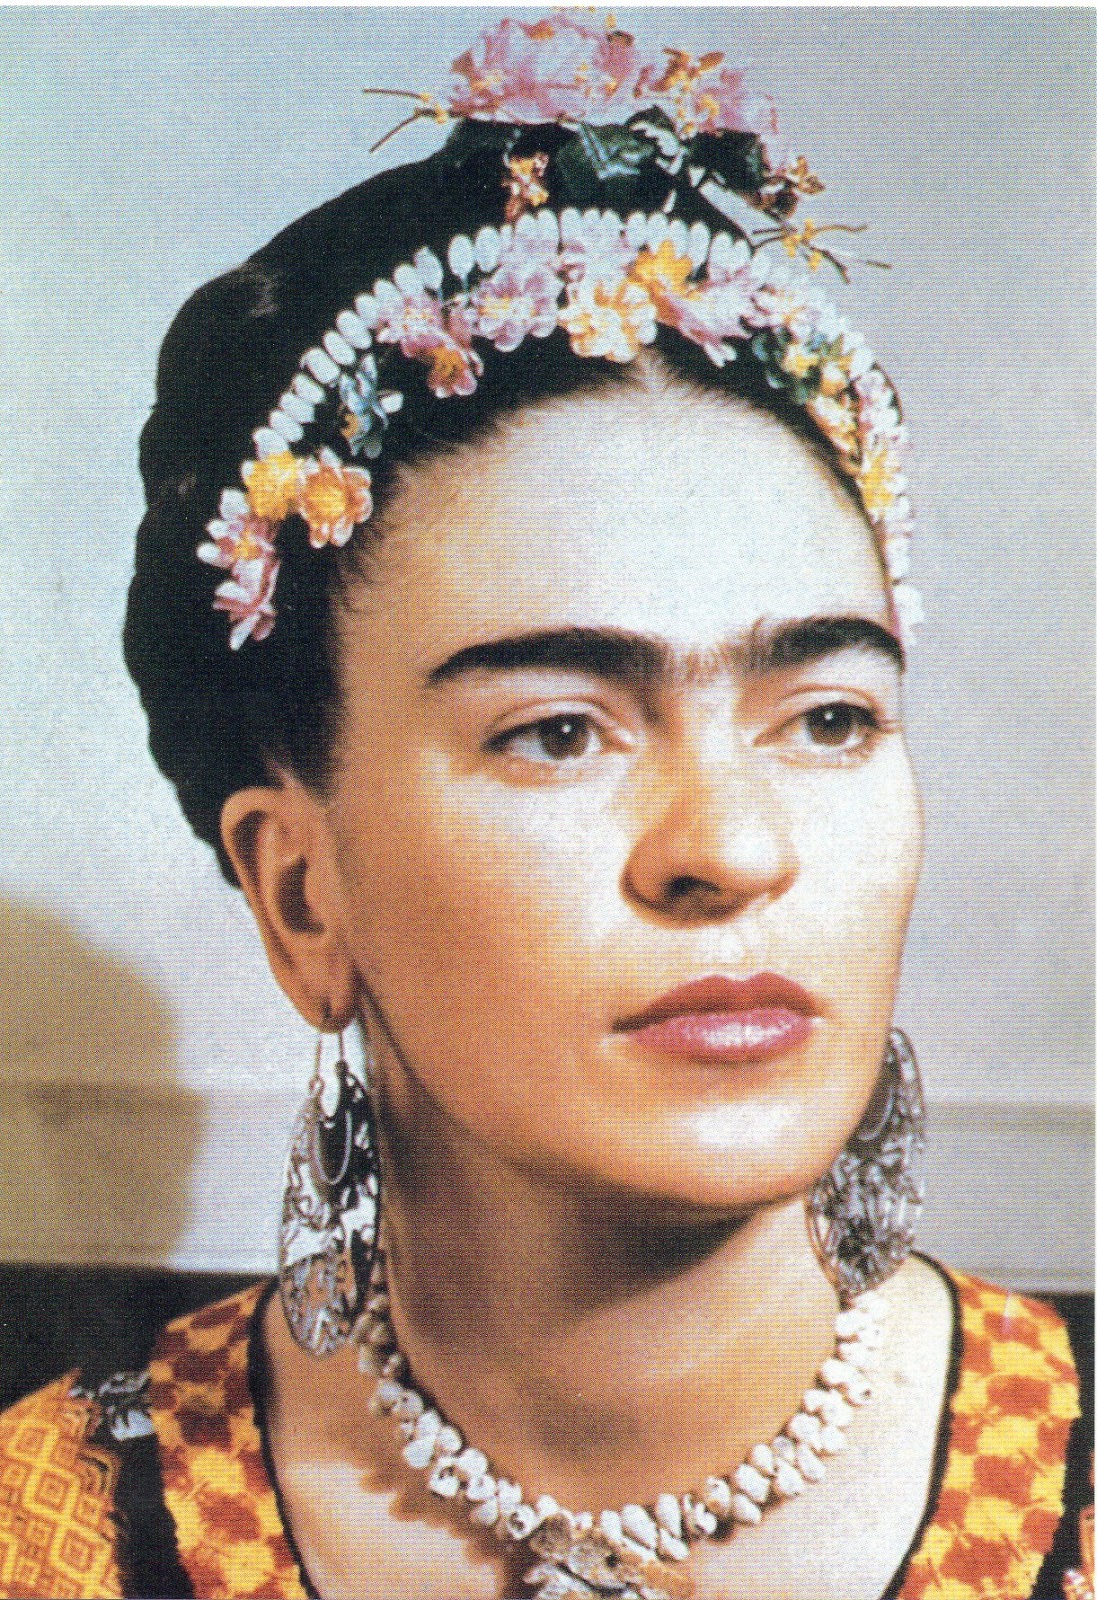 Encyclopedia Gforpollogica in postcards: Frida Kahlo